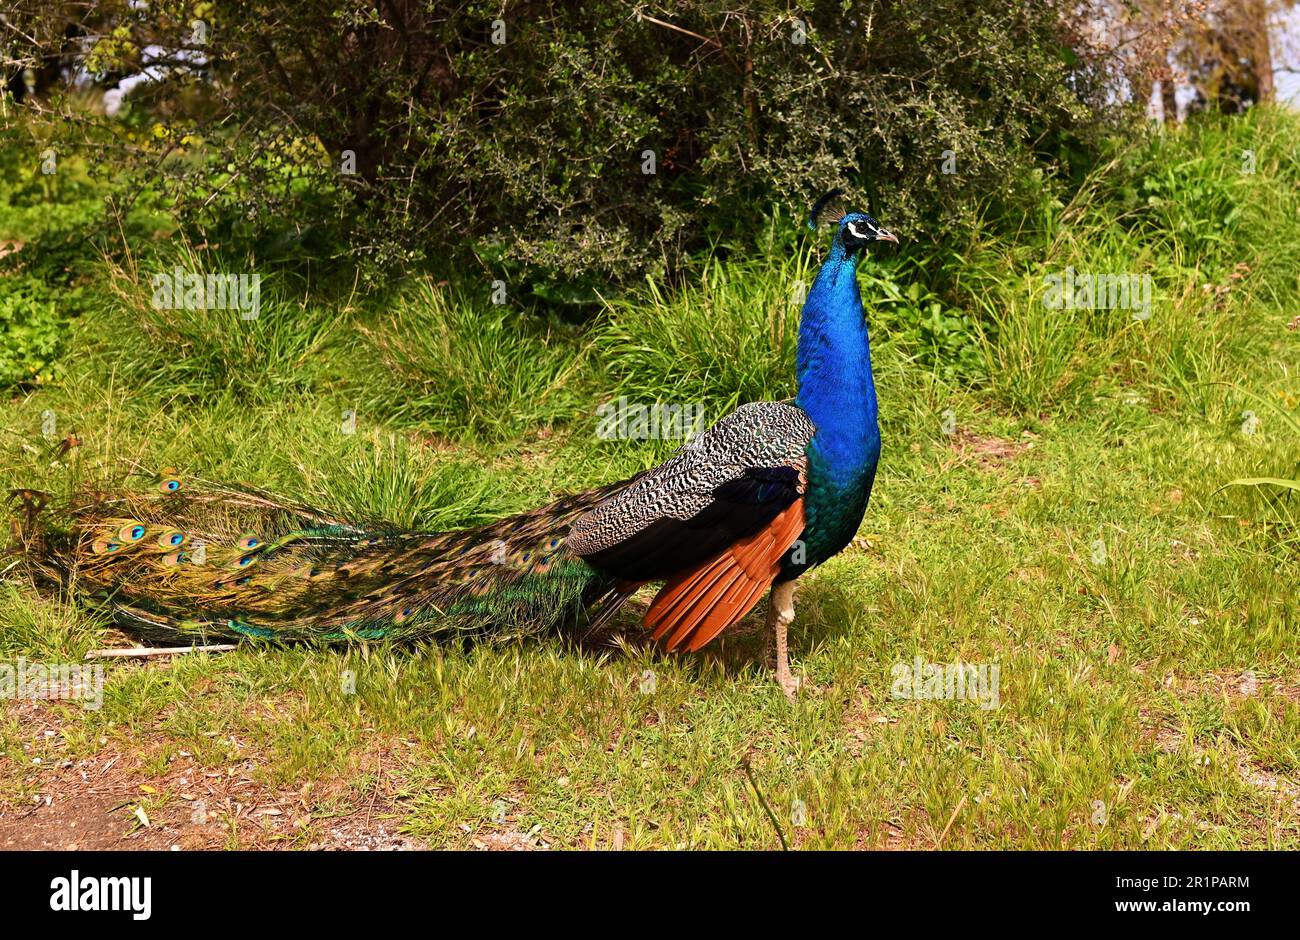 Splendidi pavoni maschi con colori vivaci di piume camminano nel parco con lunghe code. Si trova su una strada sterrata e si innalza la coda prima di aprirsi. Foto Stock